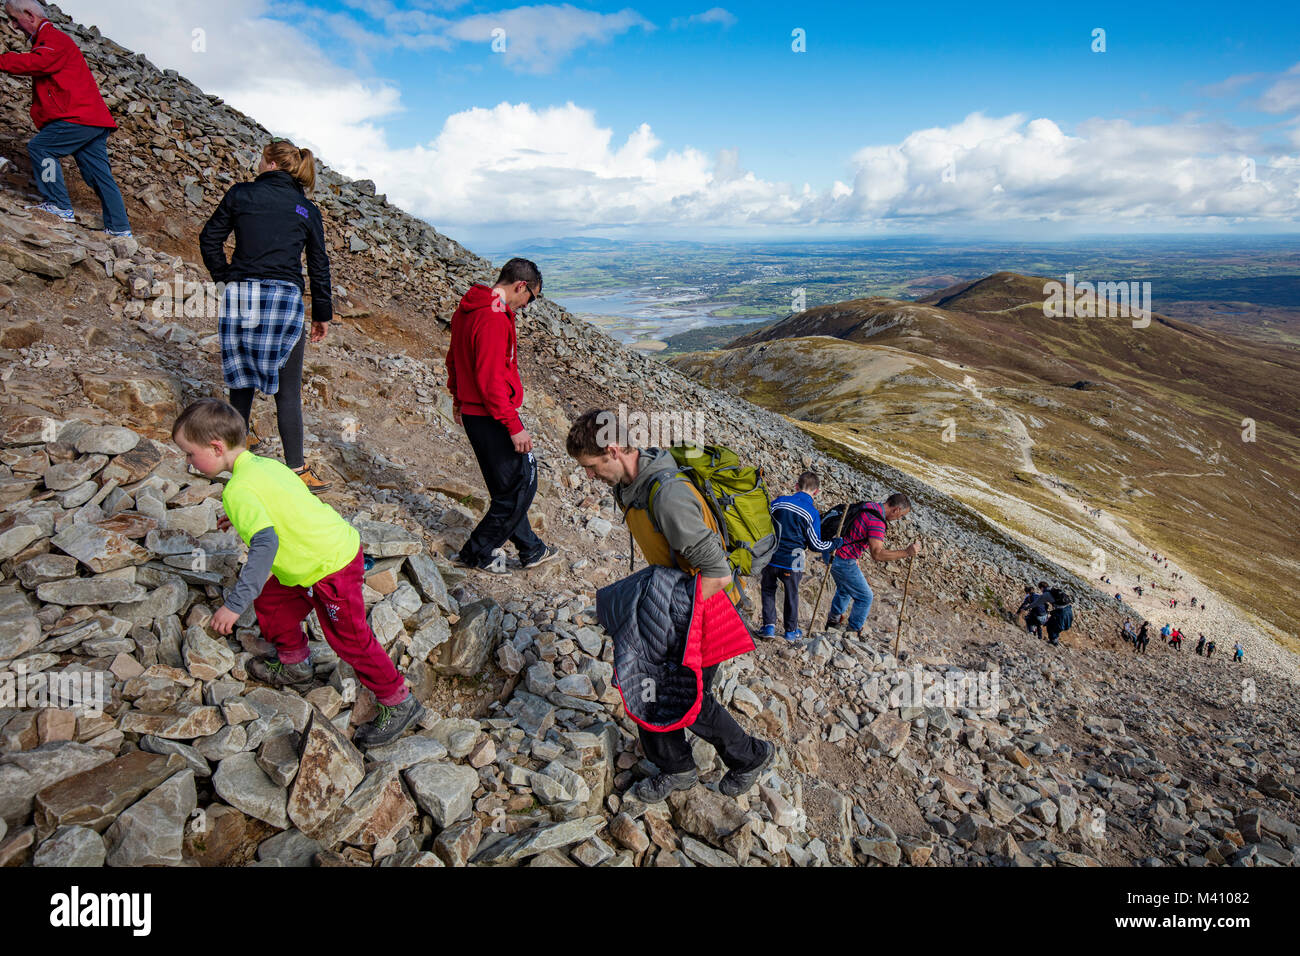 Hikers climbing Croagh Patrick, County Mayo, Ireland. Stock Photo